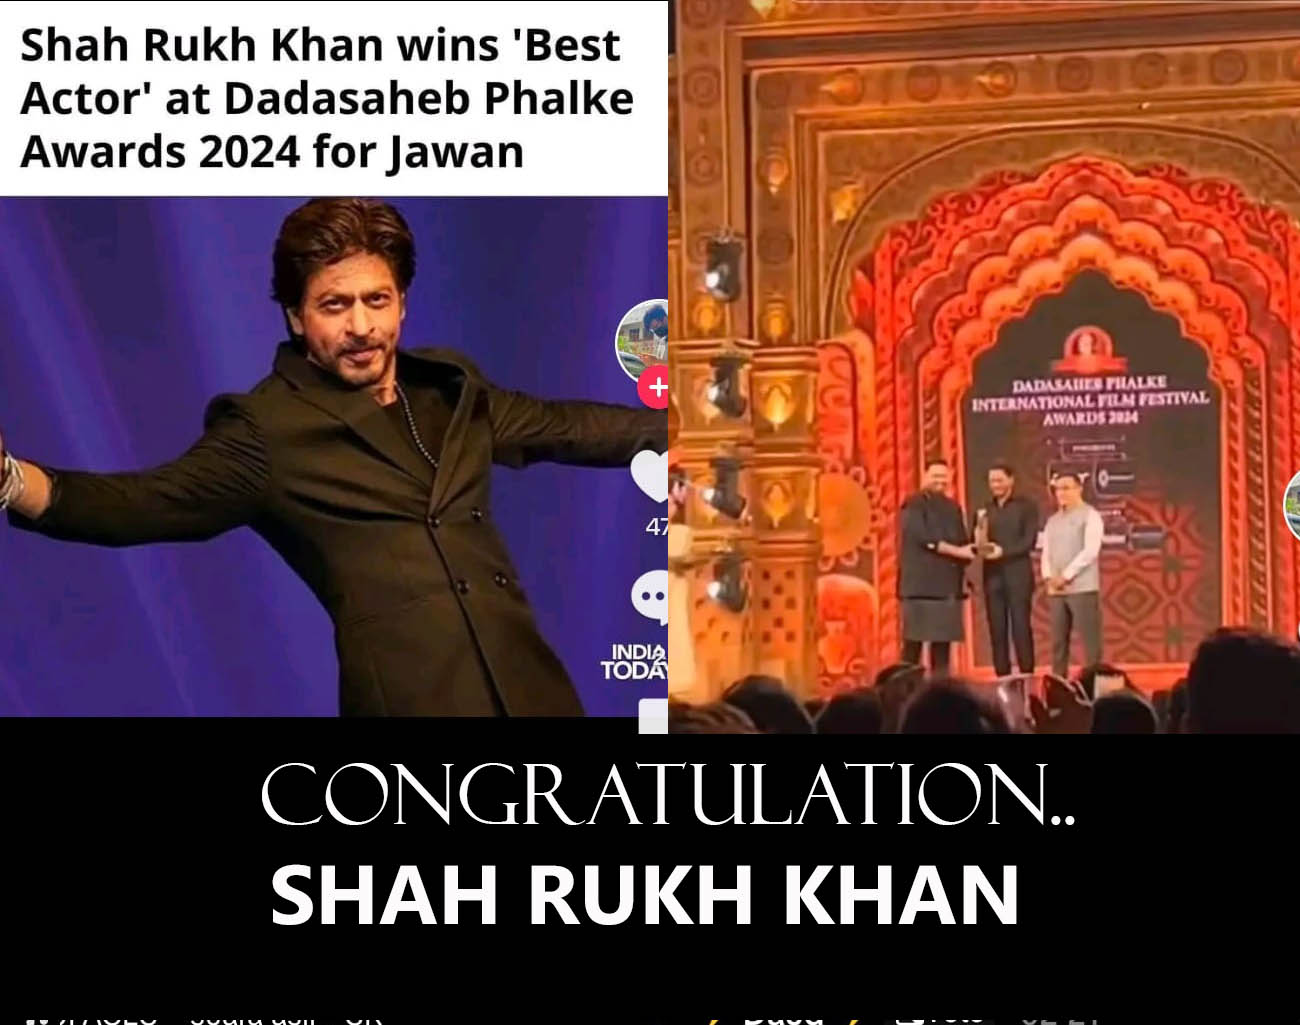 Shah Rukh Khan Bertabur Penghargaan, Aktor Terbaik Film India, Dikabarkan Meninggal Dunia, Sakit, dan Sembuh